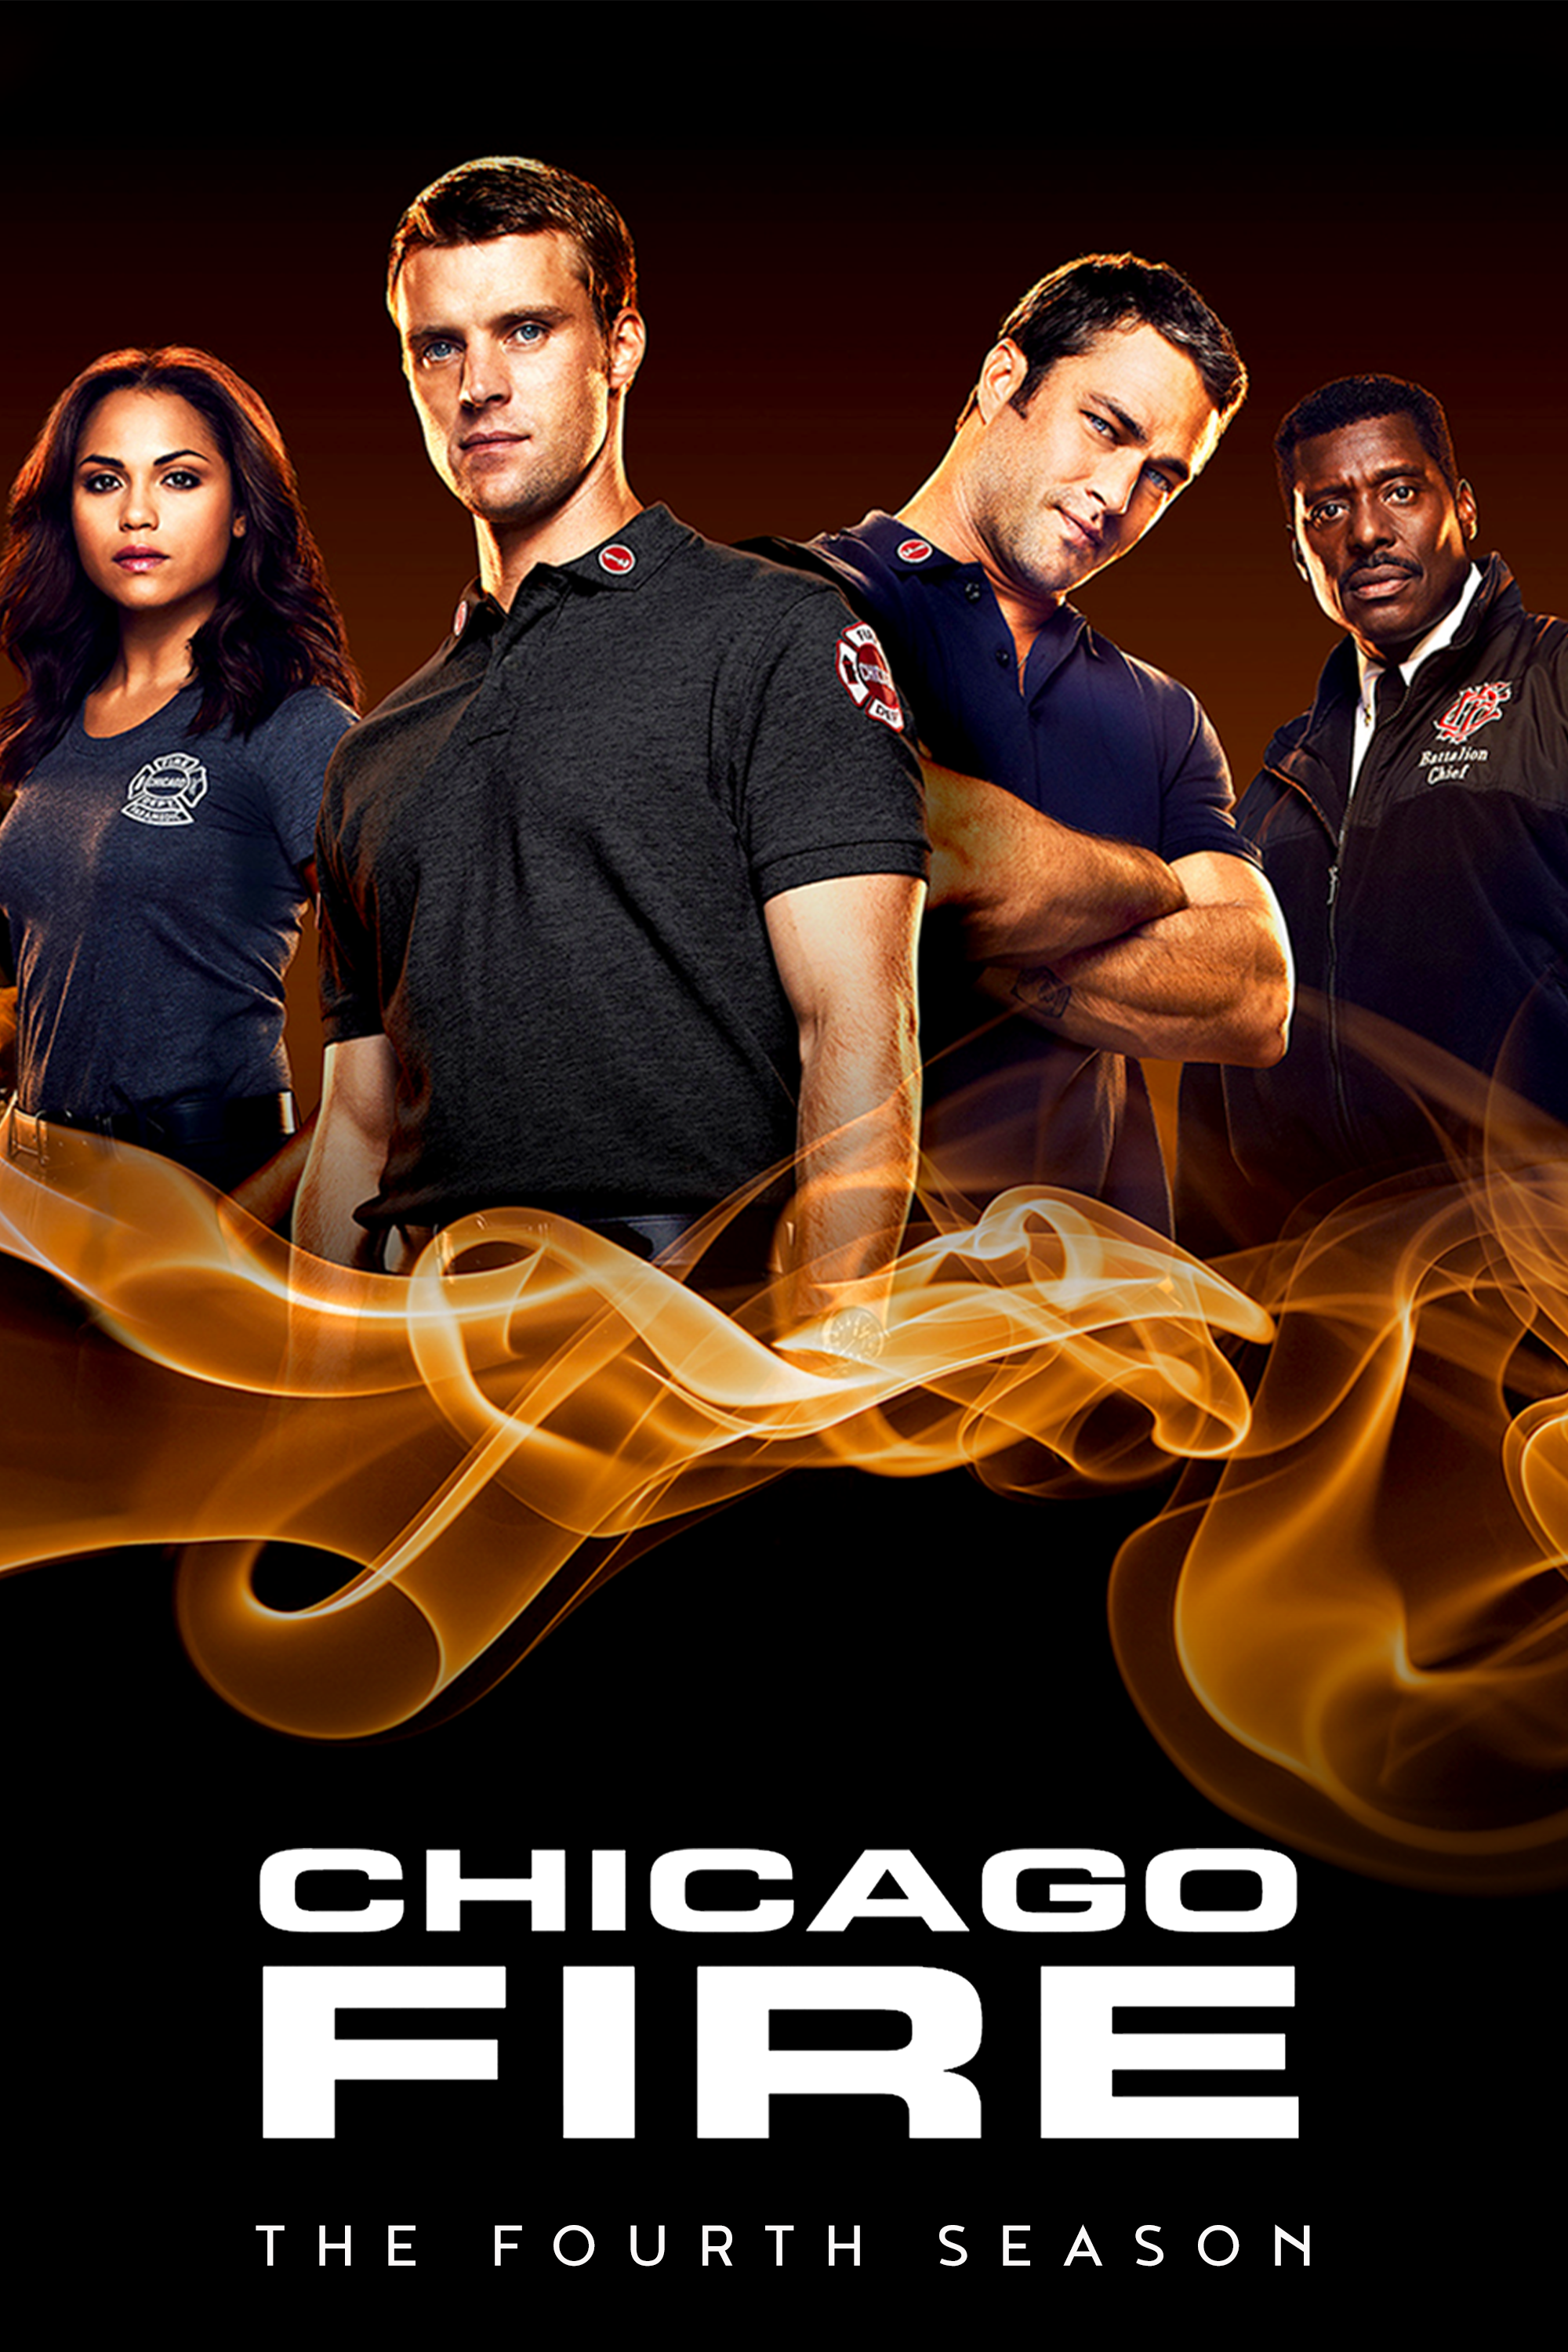 ดูหนังออนไลน์ฟรี Chicago Fire Season 4 EP.16 ชิคาโก้ ไฟร์ หน่วยดับเพลิงท้านรก ซีซั่นที่ 4 ตอนที่ 16